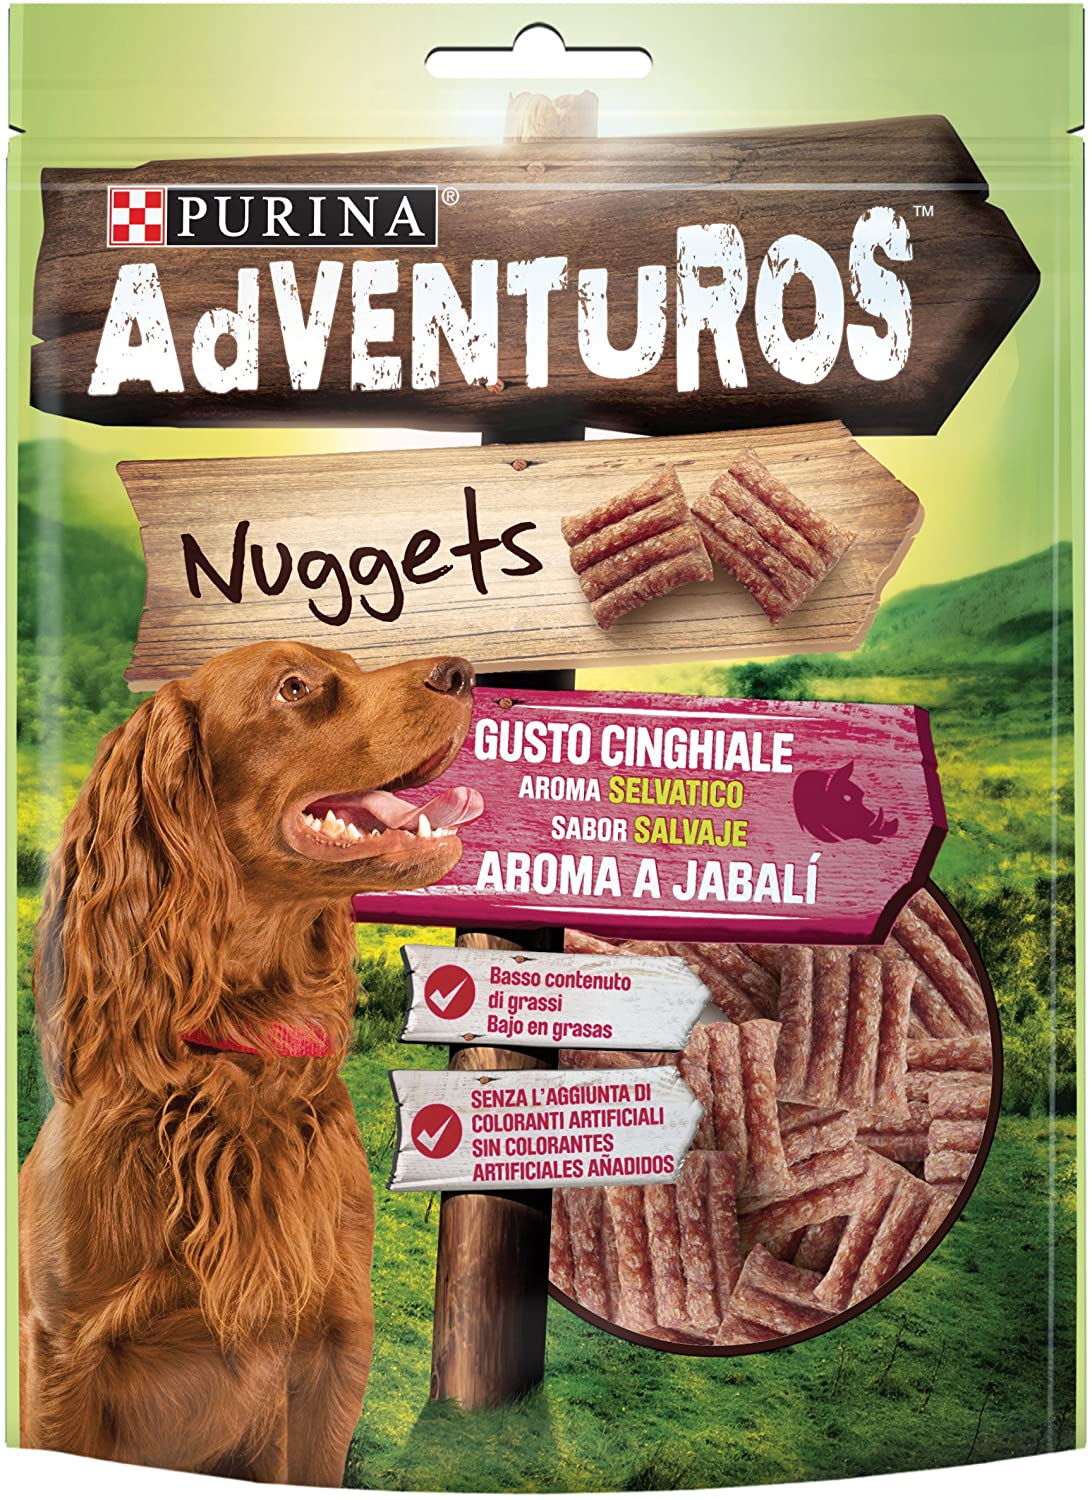  Purina Adventuros Nuggets golosinas y chuches para perros 6 x 90 g 